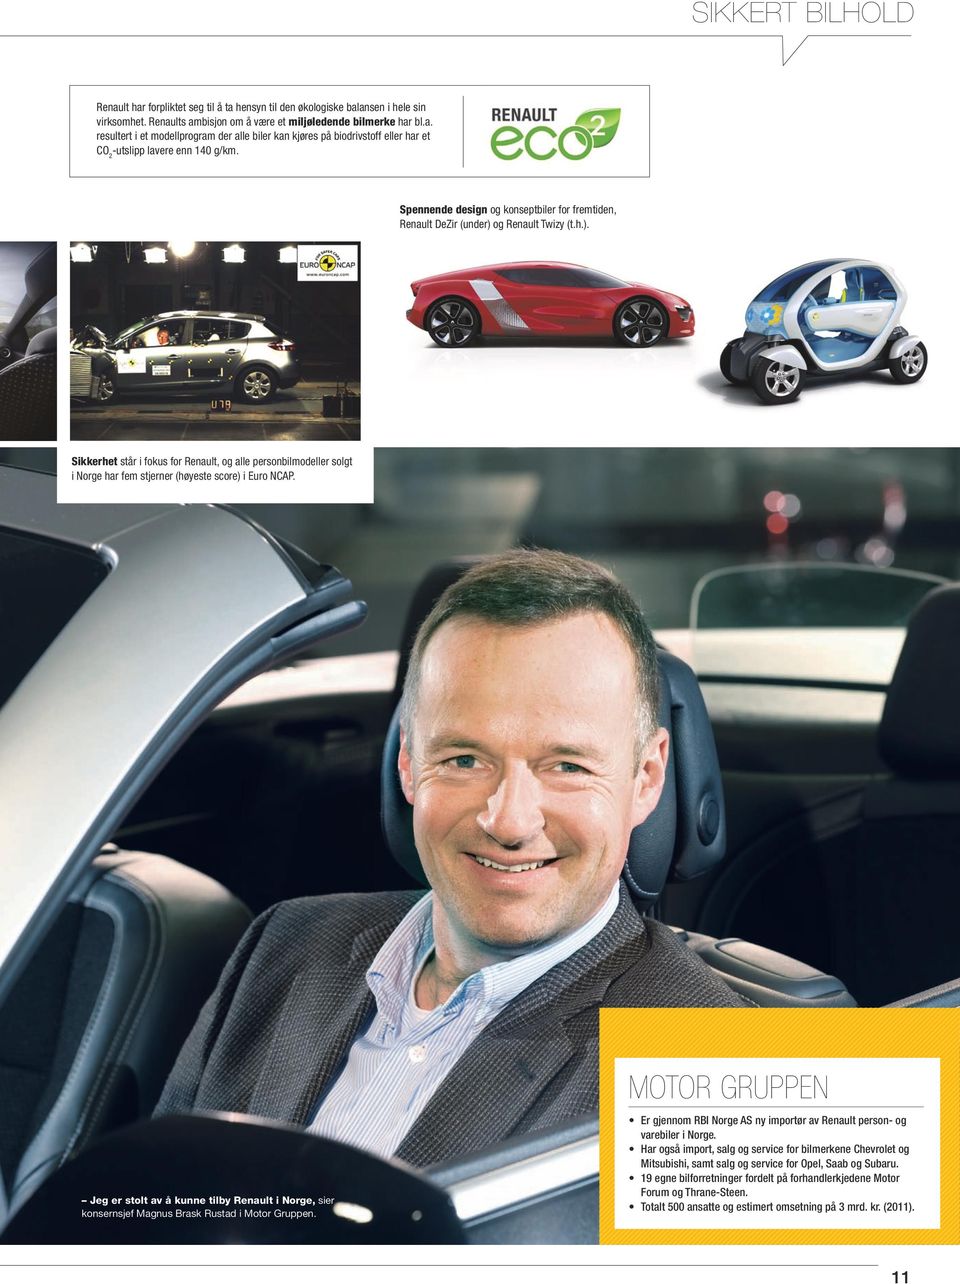 Jeg er stolt av å kunne tilby Renault i Norge, sier konsernsjef Magnus Brask Rustad i Motor Gruppen. motor Gruppen Er gjennom RBI Norge AS ny importør av Renault person- og varebiler i Norge.